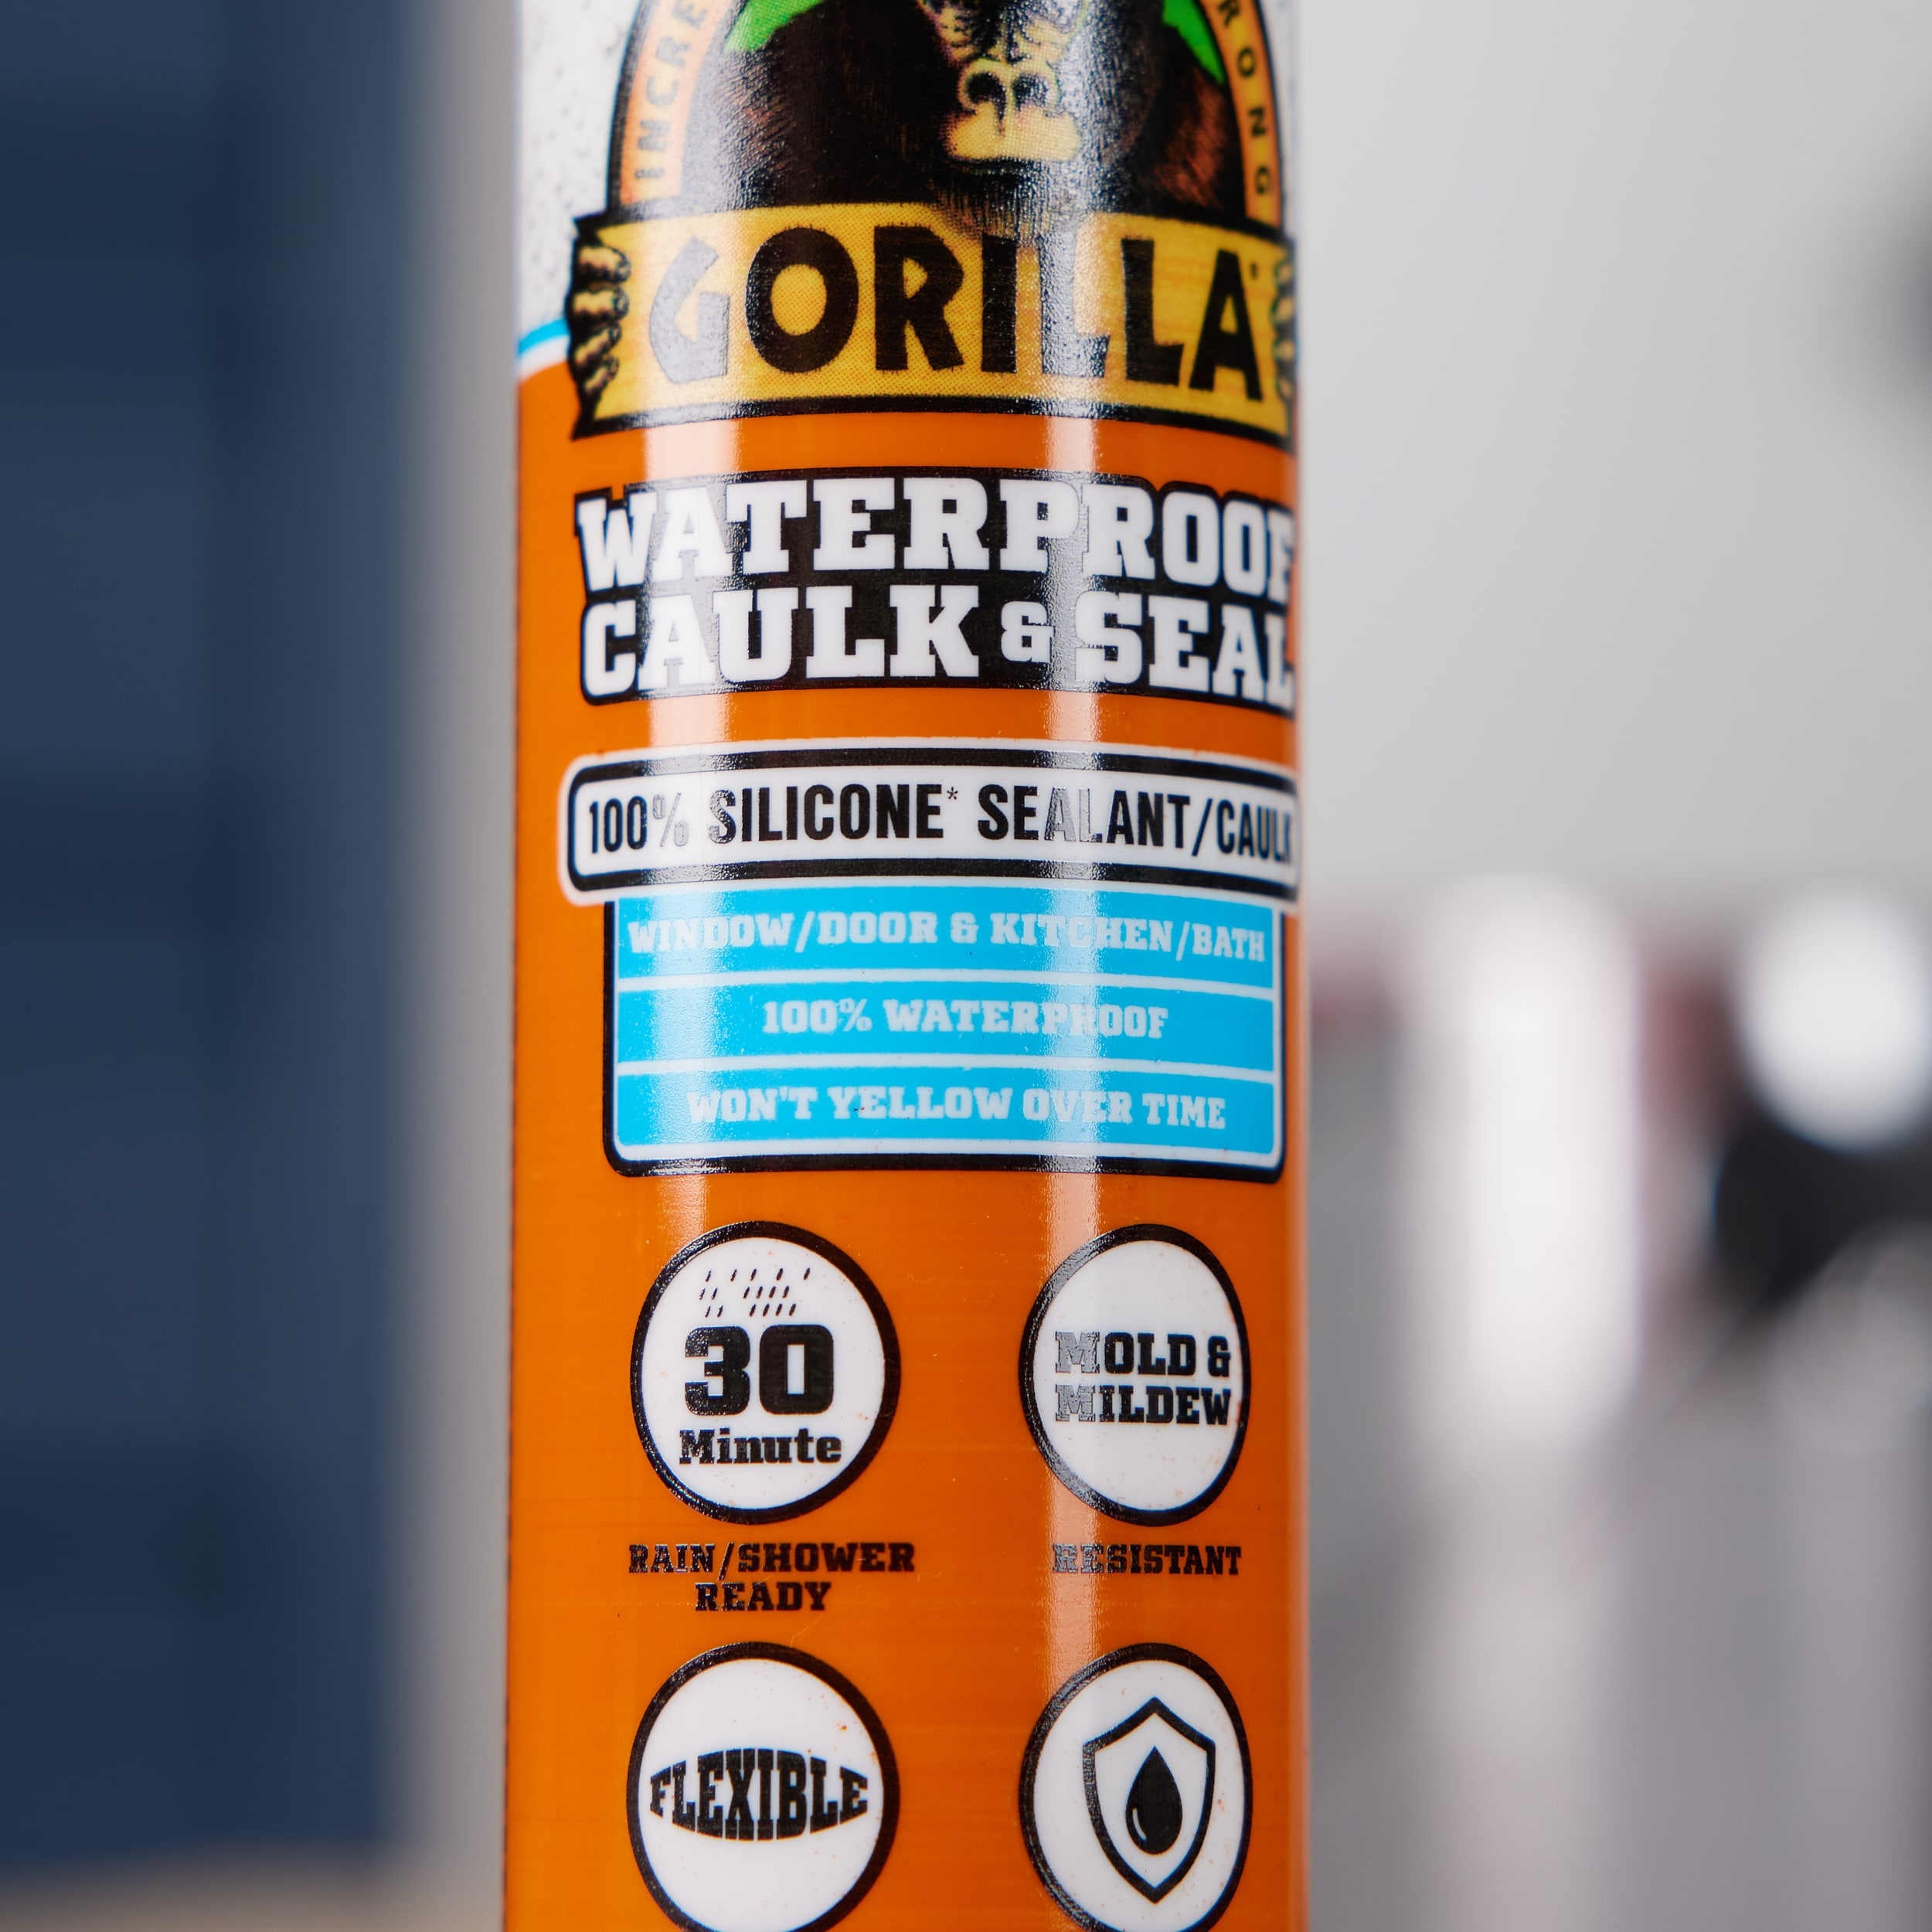 Gorilla Glue on X: Gorilla 100% Silicone* Sealant is great for